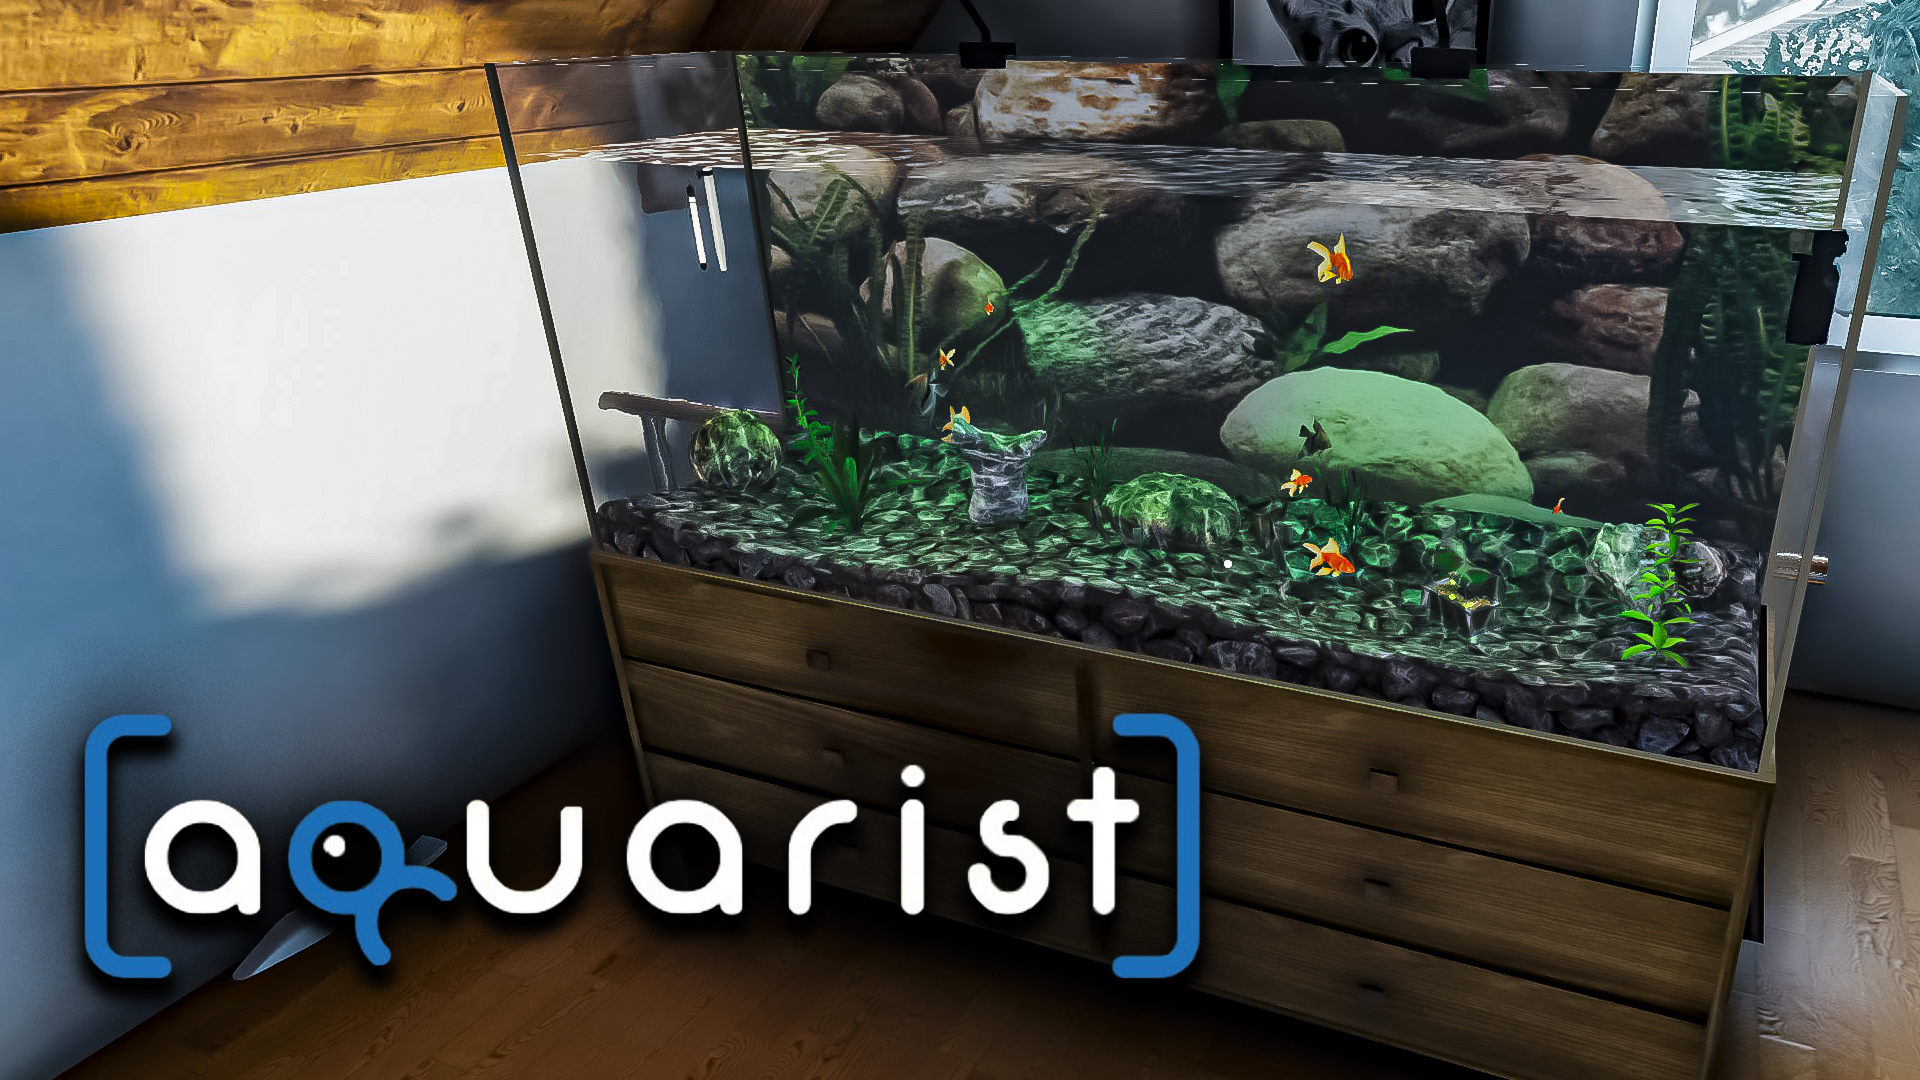 СПАСЛА РЫБОК ОТ ЖАДНОГО КОТА - Aquarist стройте аквариумы, выращивайте рыб, развивайте свой бизнес!